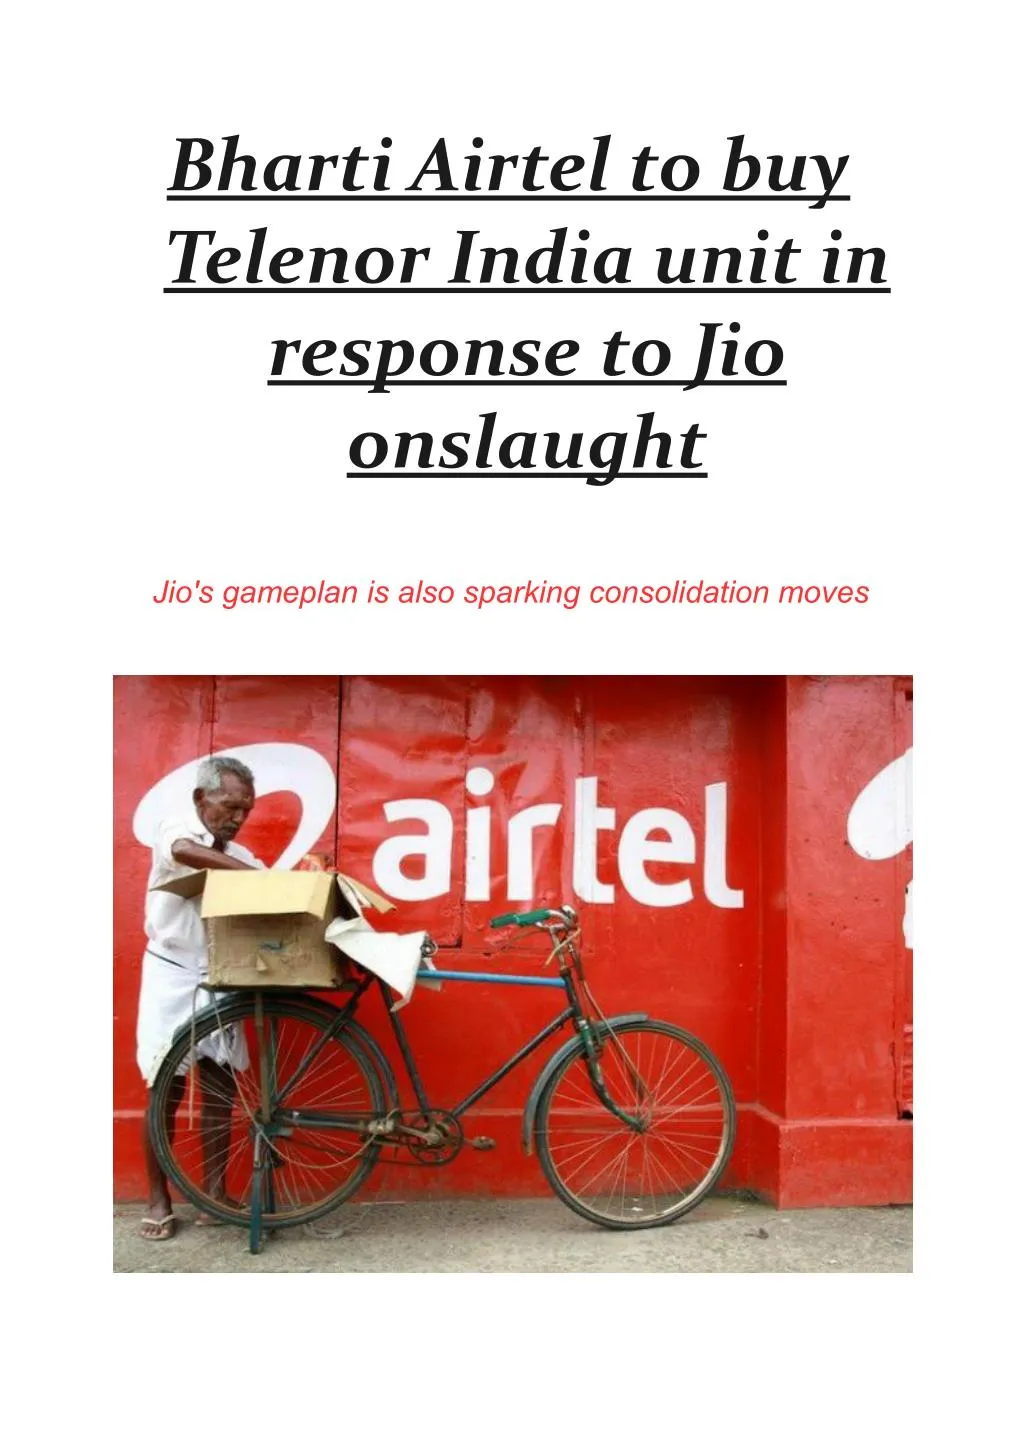 bharti airtel to buy telenor india unit